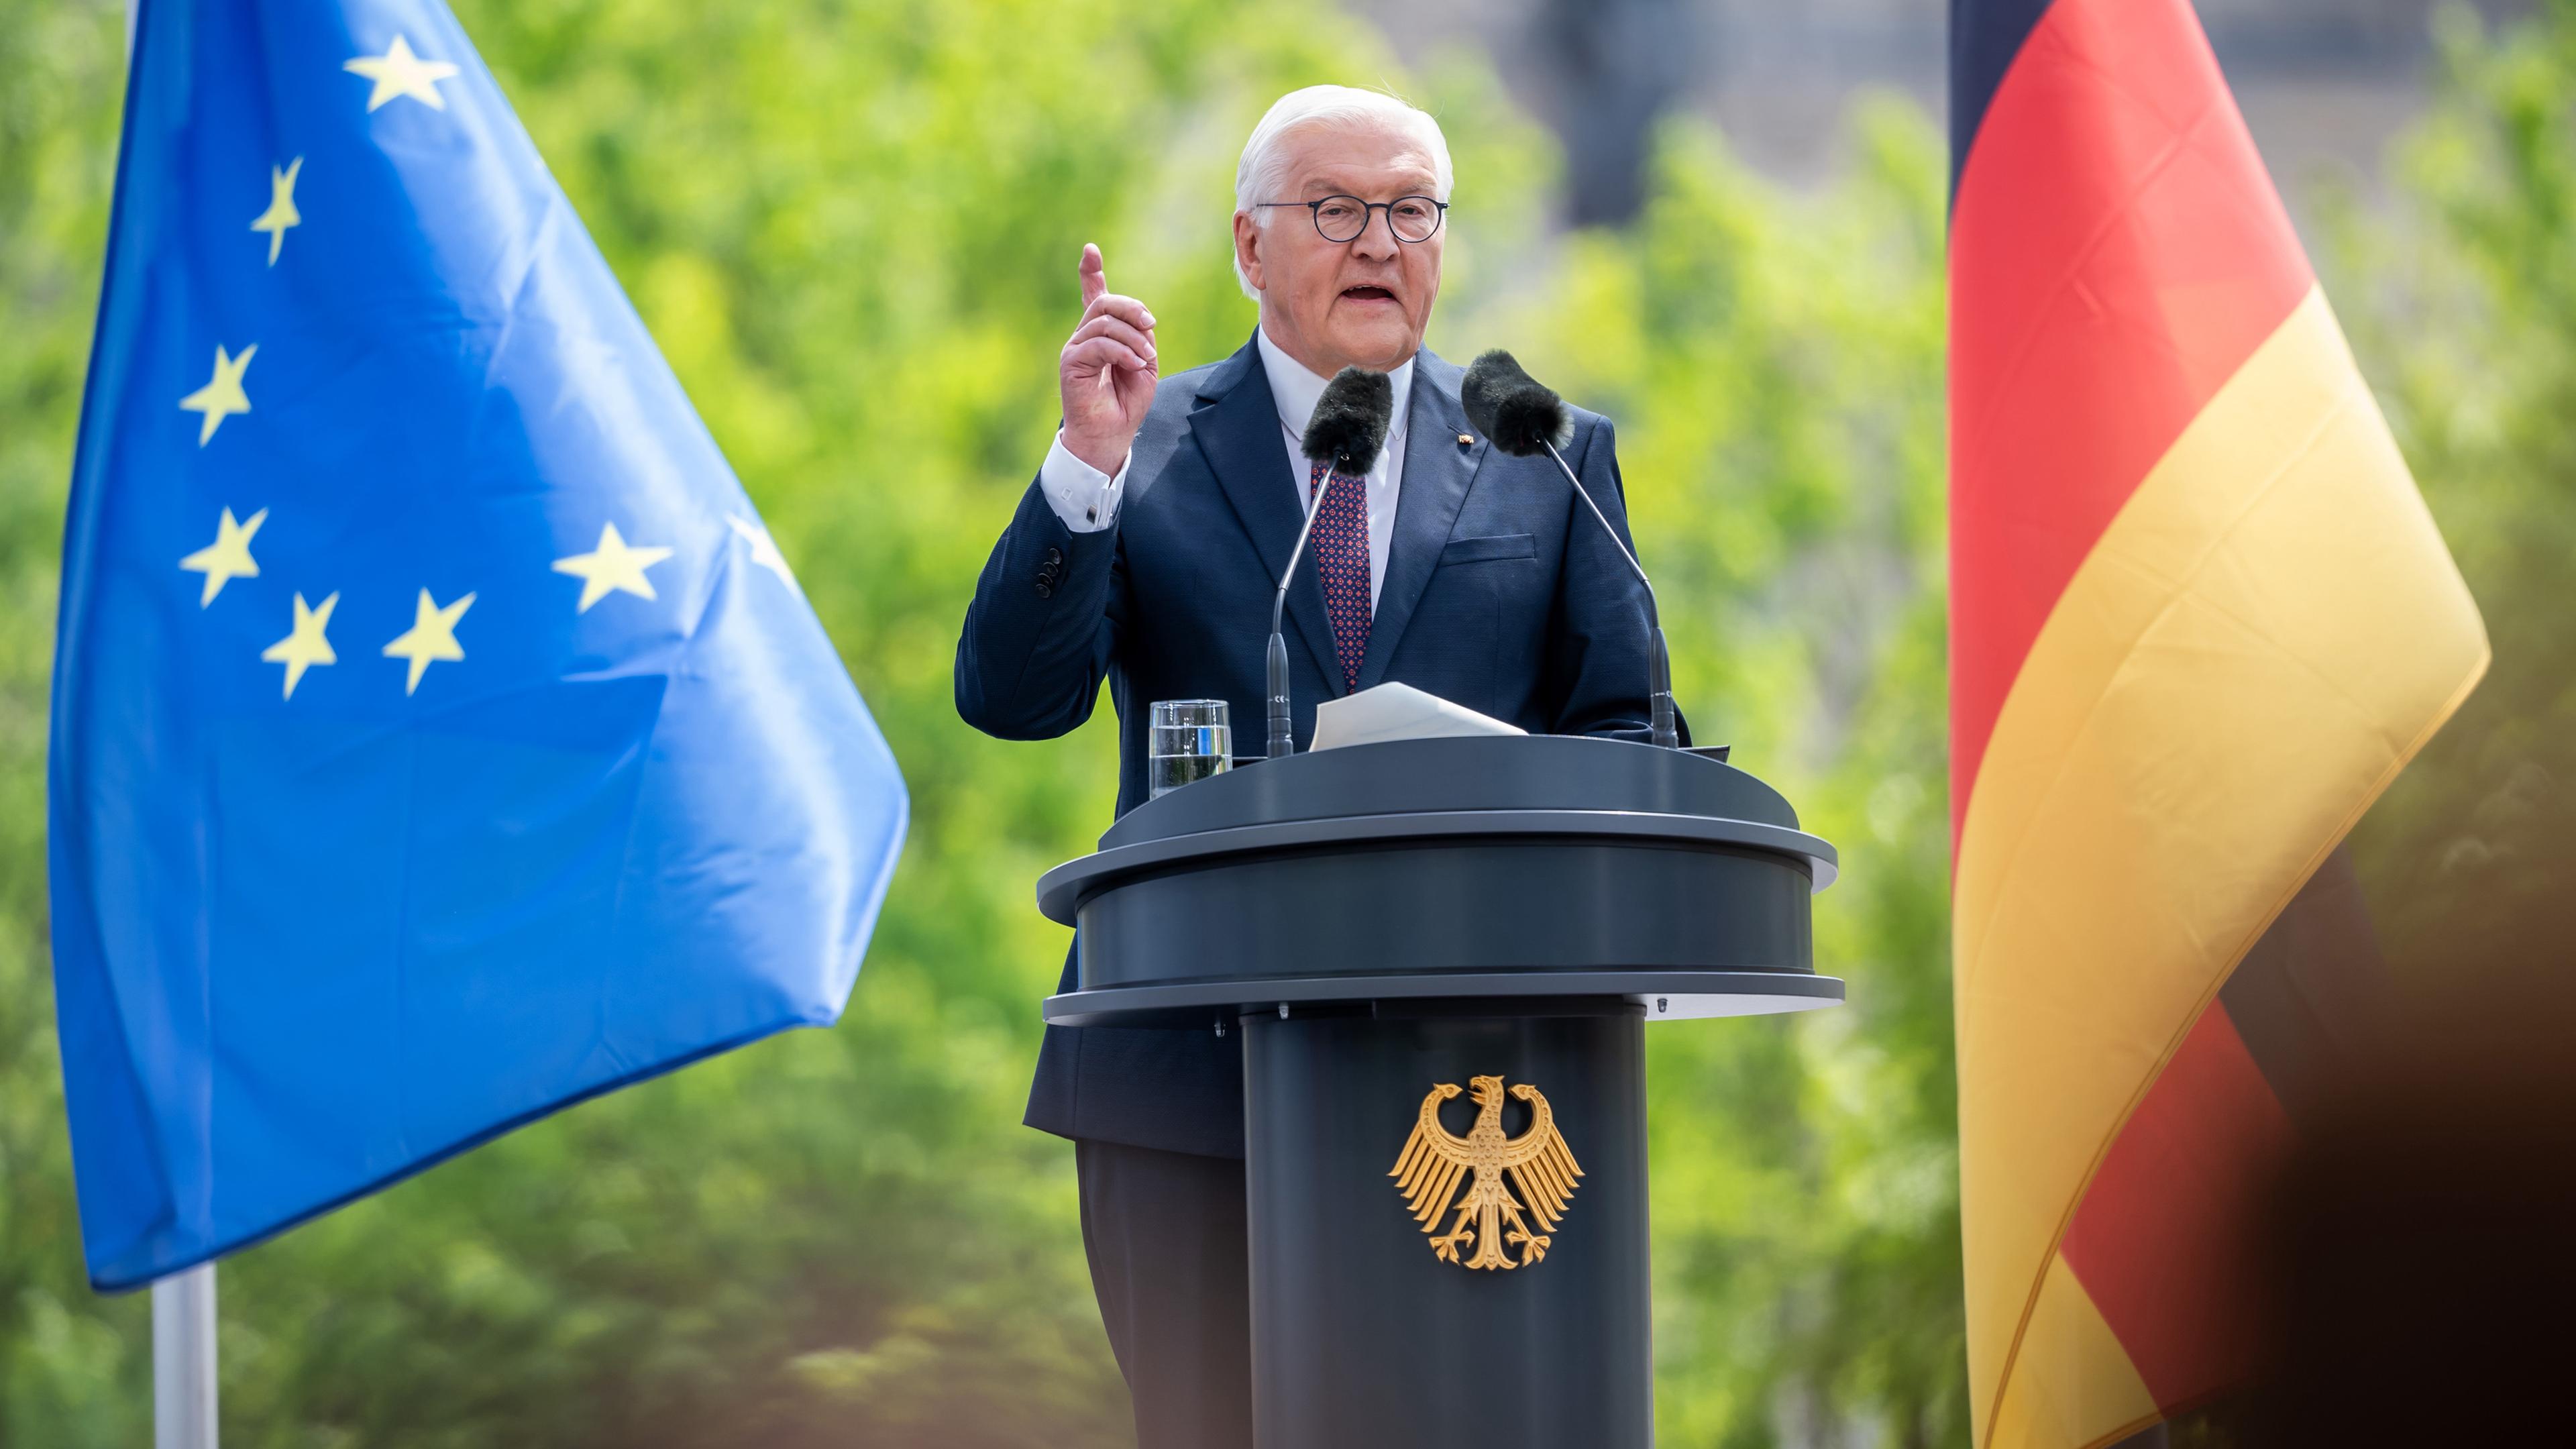  Bundespräsident Frank-Walter Steinmeier spricht beim Staatsakt zu "75 Jahre Grundgesetz" auf dem Forum zwischen Bundestag und Bundeskanzleramt.